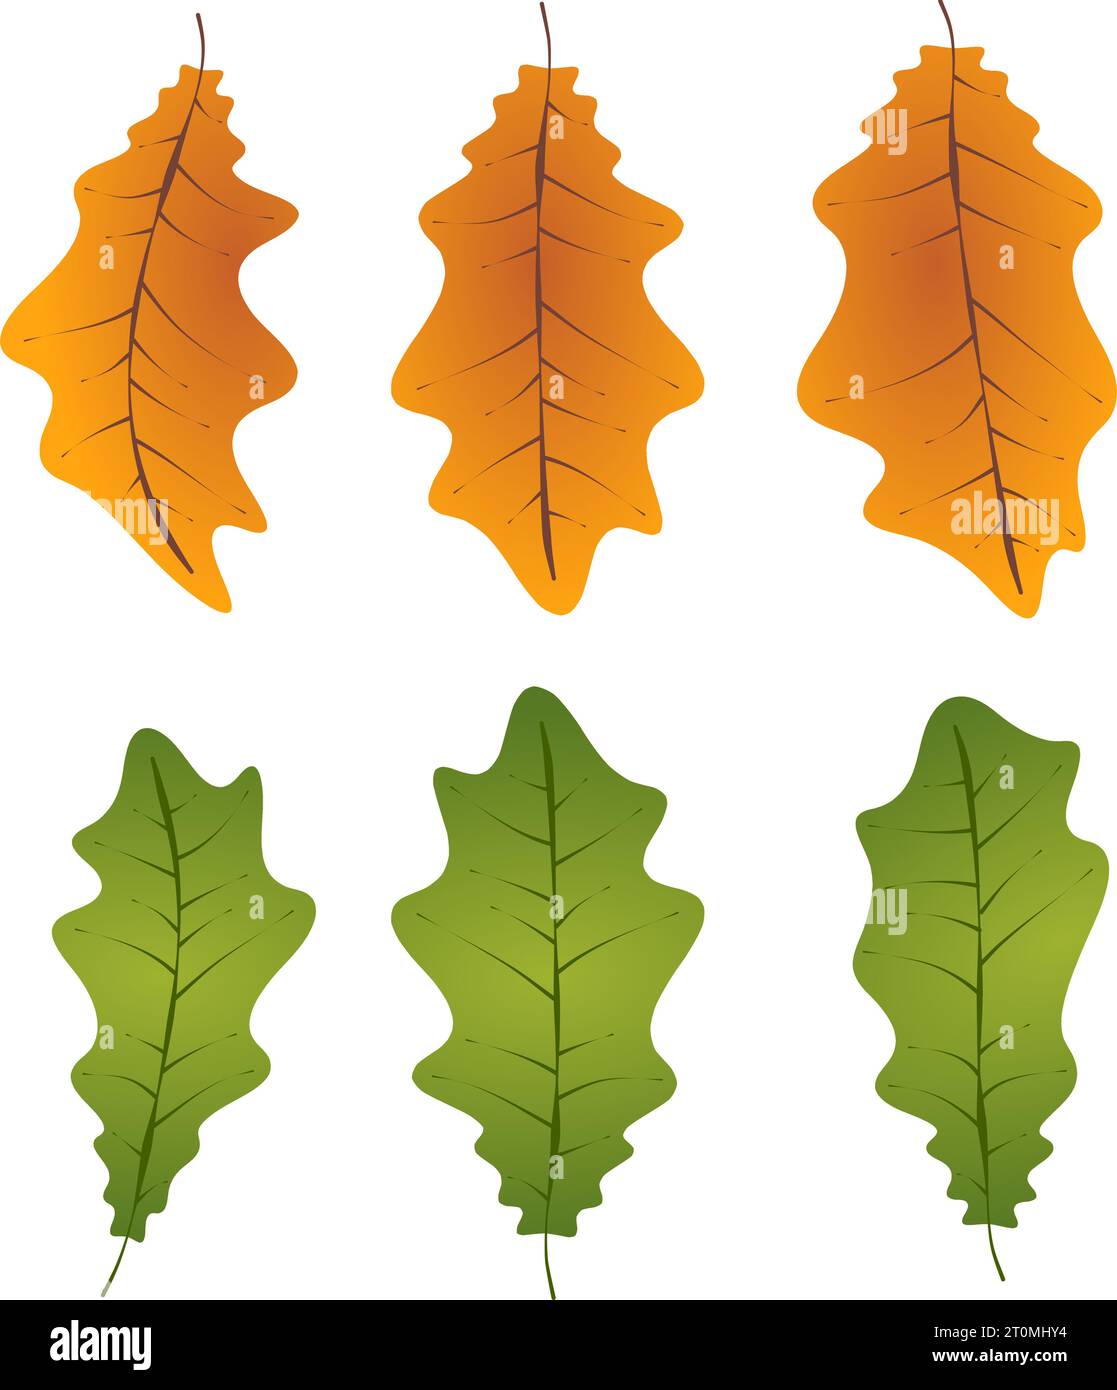 Graphique illustré feuilles de chêne d'automne feuillage tombé graphique illustré couleurs vert orange Illustration de Vecteur